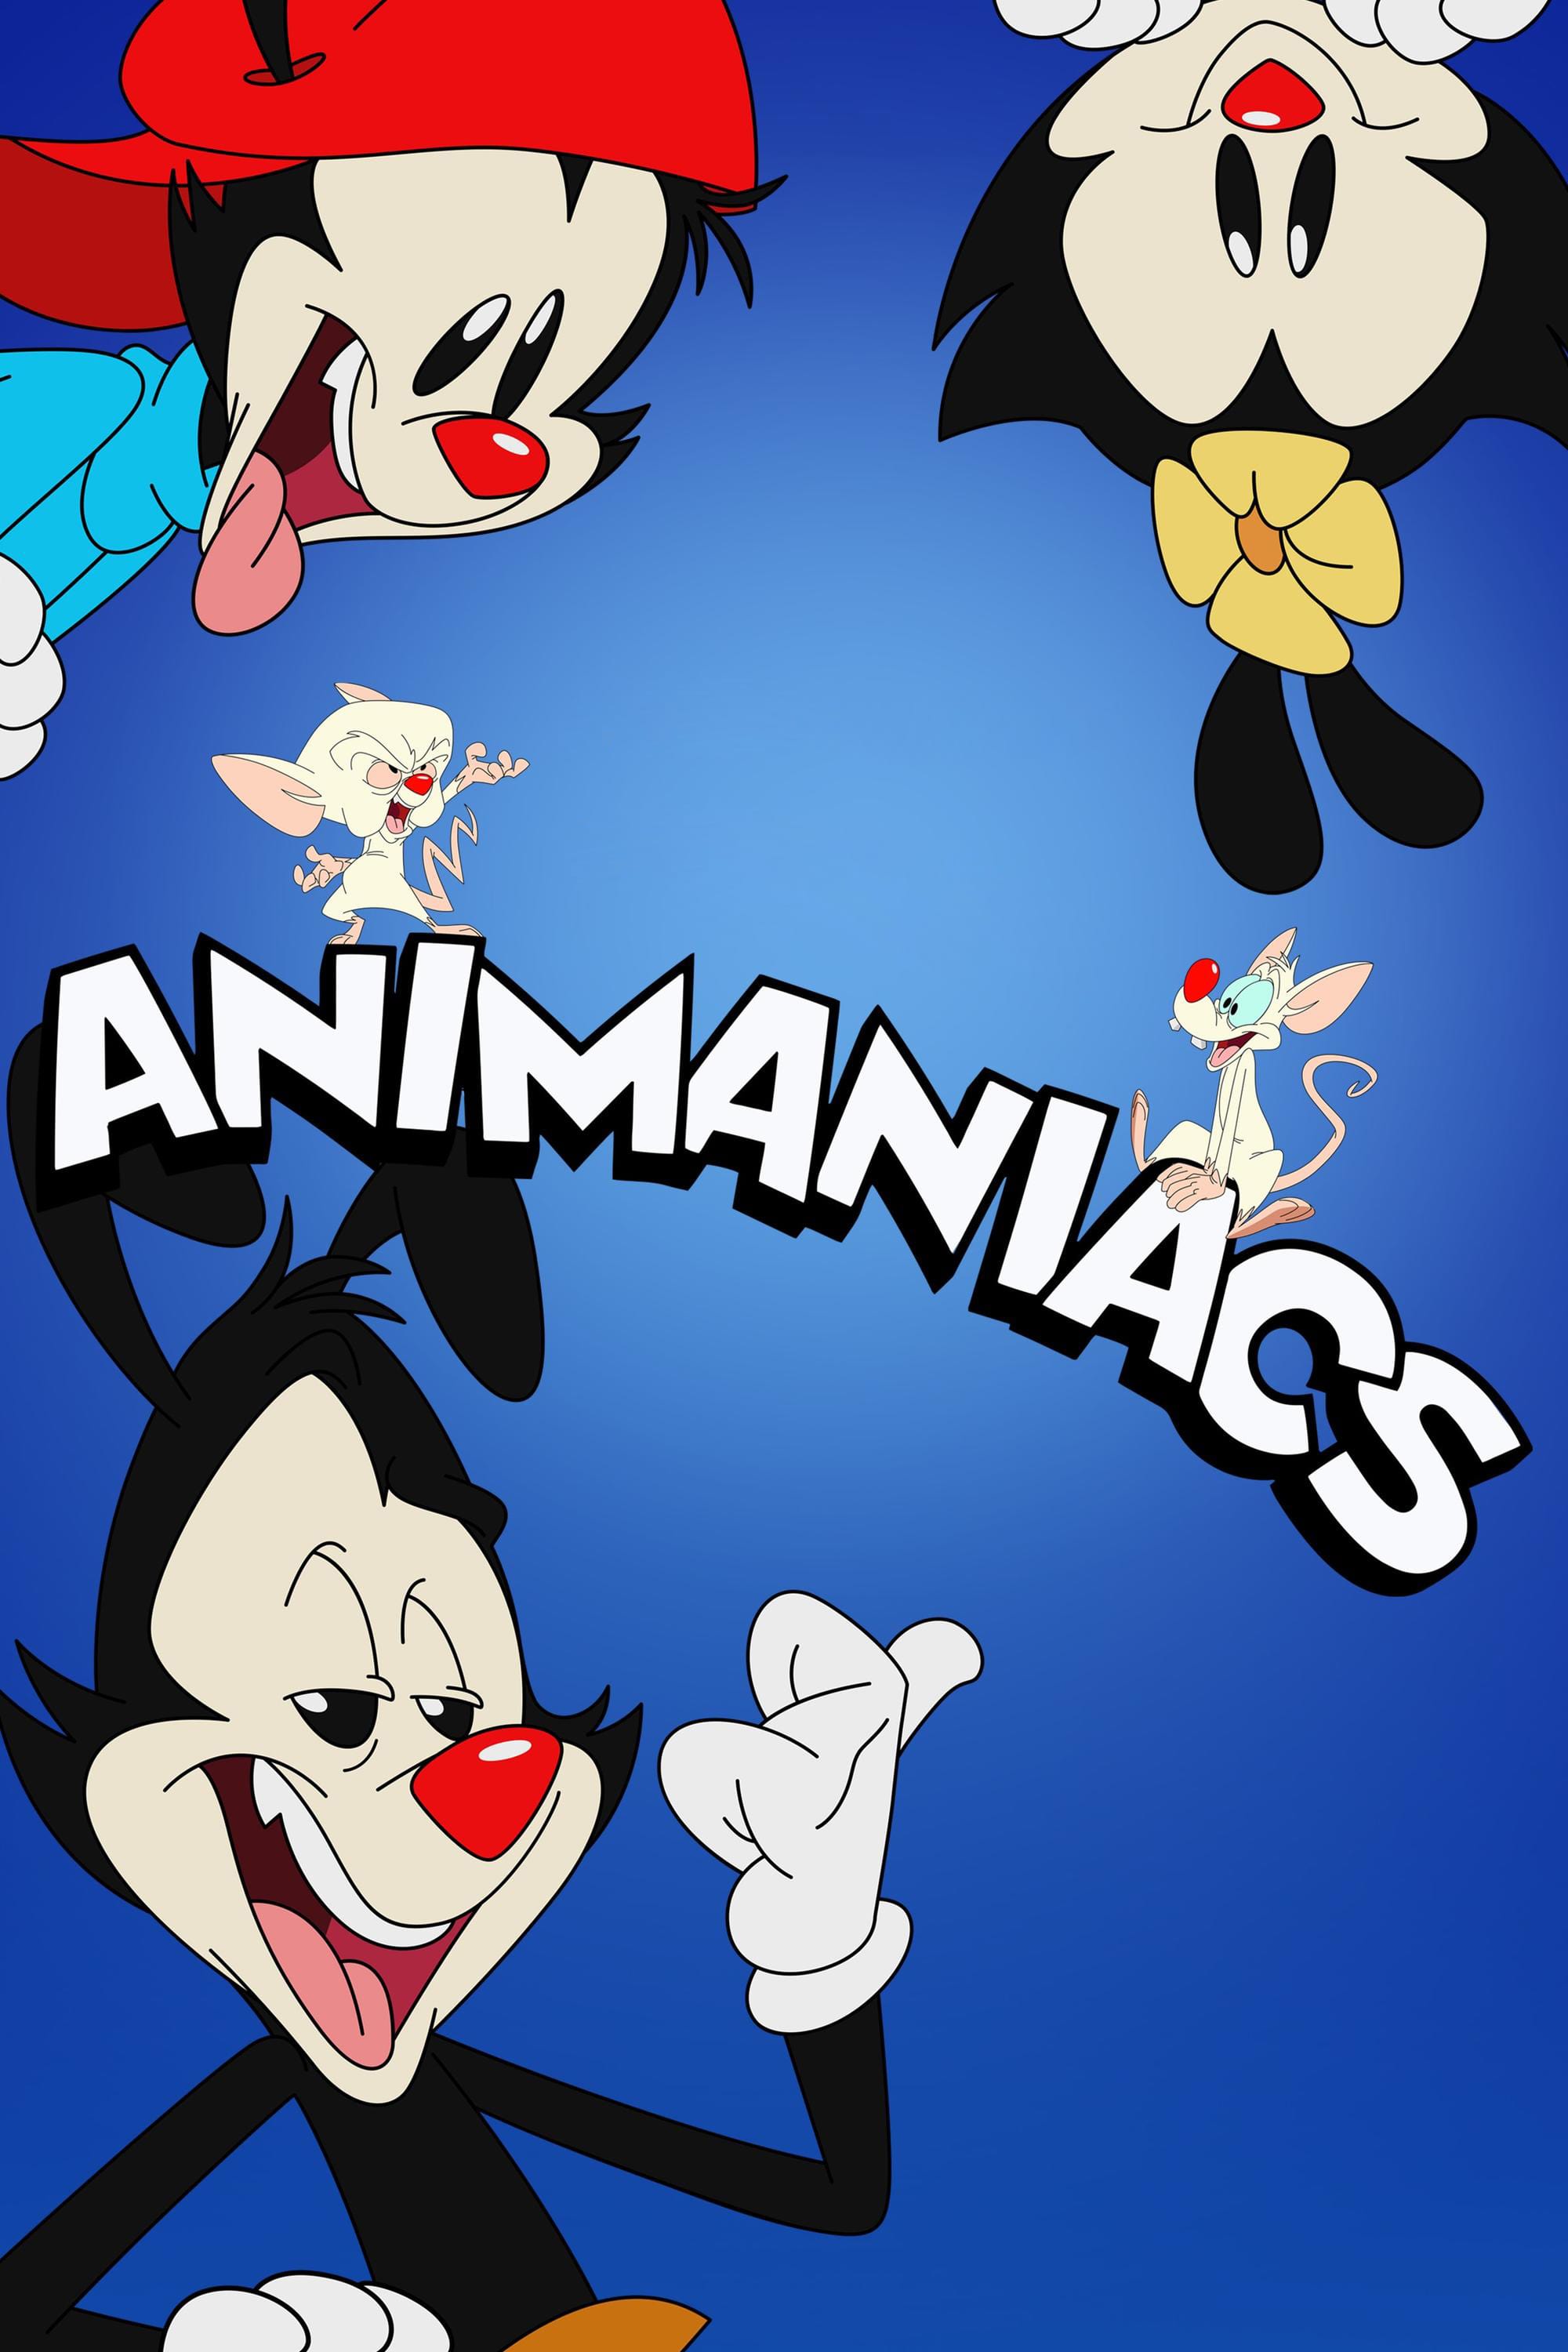 Animaniacs (2020) Picture